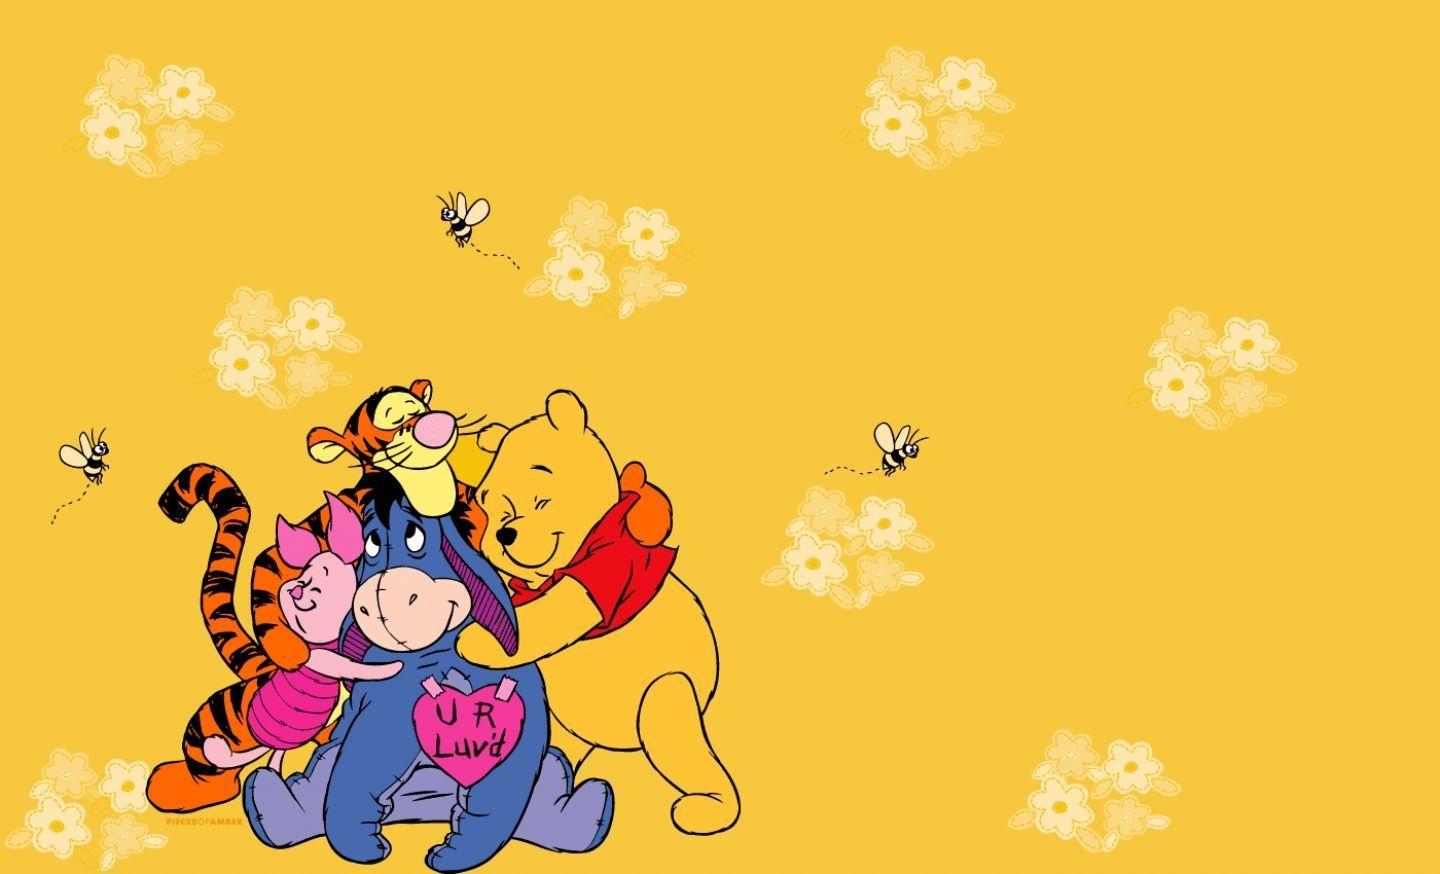 画像 ディズニー くまのプーさん Winnie The Pooh Pcデスクトップ壁紙 画像 高画質 Naver まとめ